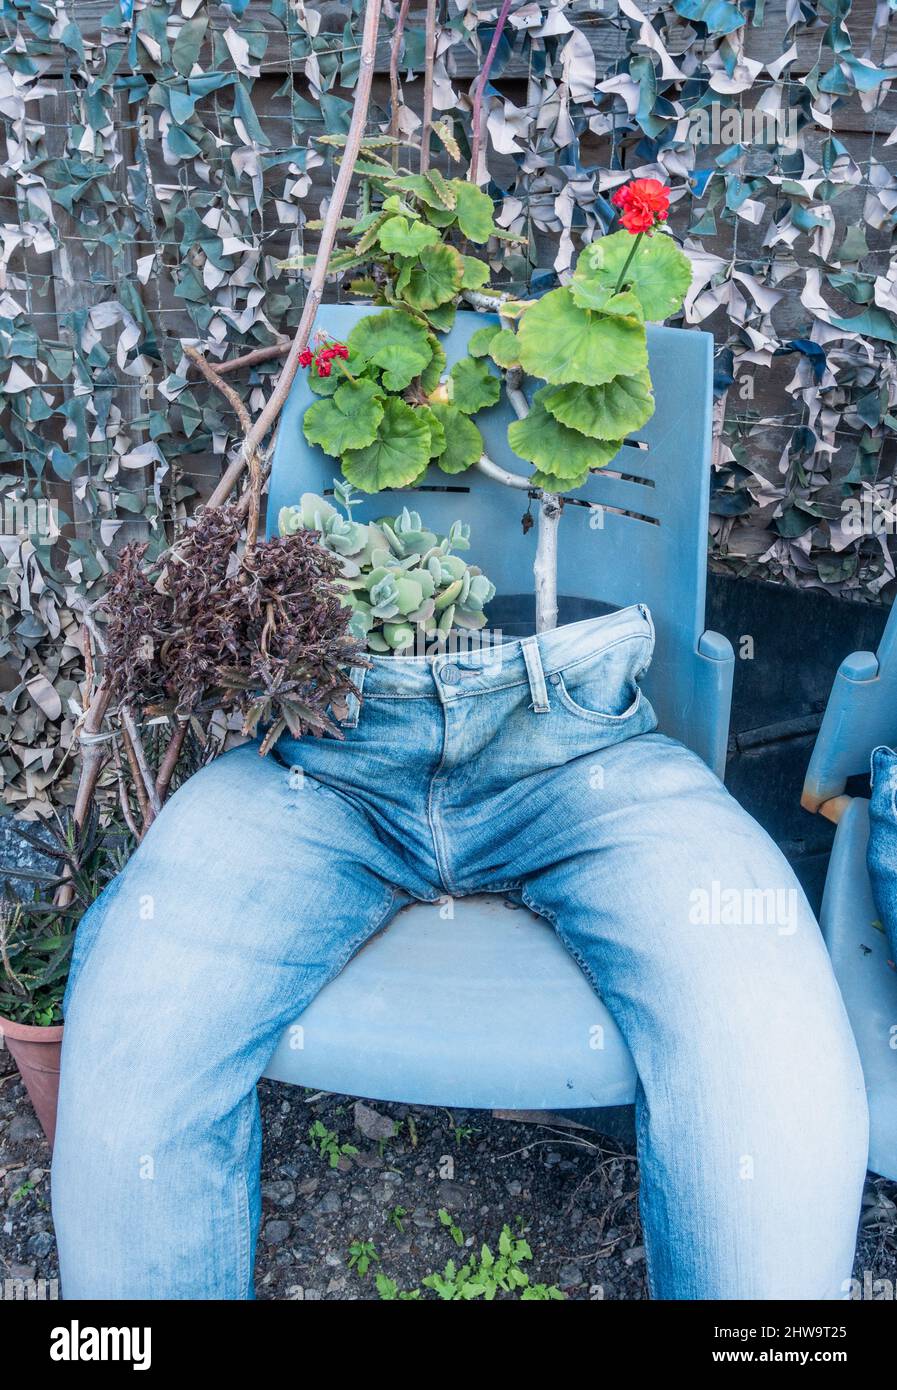 Alte Jeans aus Denim, die als Pflanzenbehälter im Garten verwendet wurden. Ungewöhnlicher Garten, Pflanzenbehälter, Recycling alter Kleidung. Stockfoto